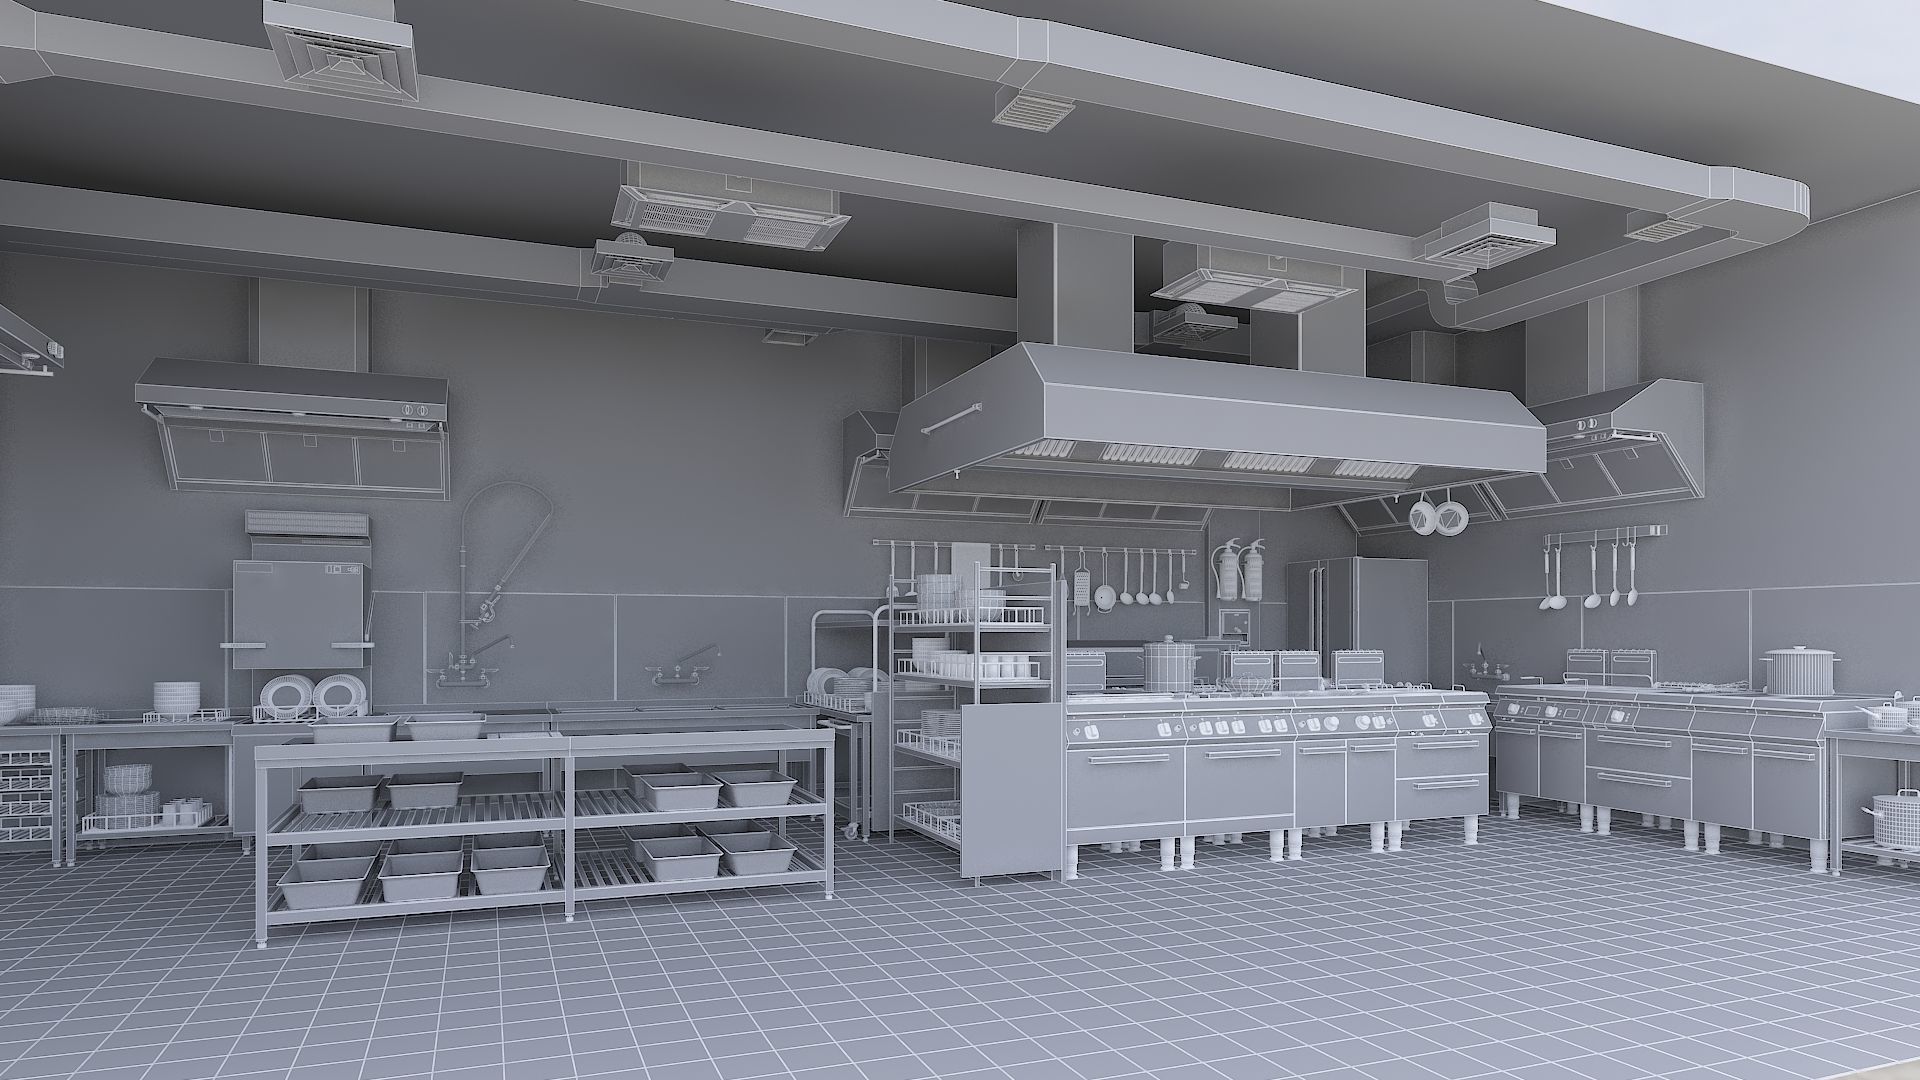 commercial-kitchen-v2-3d-model-max-obj-fbx-stl4